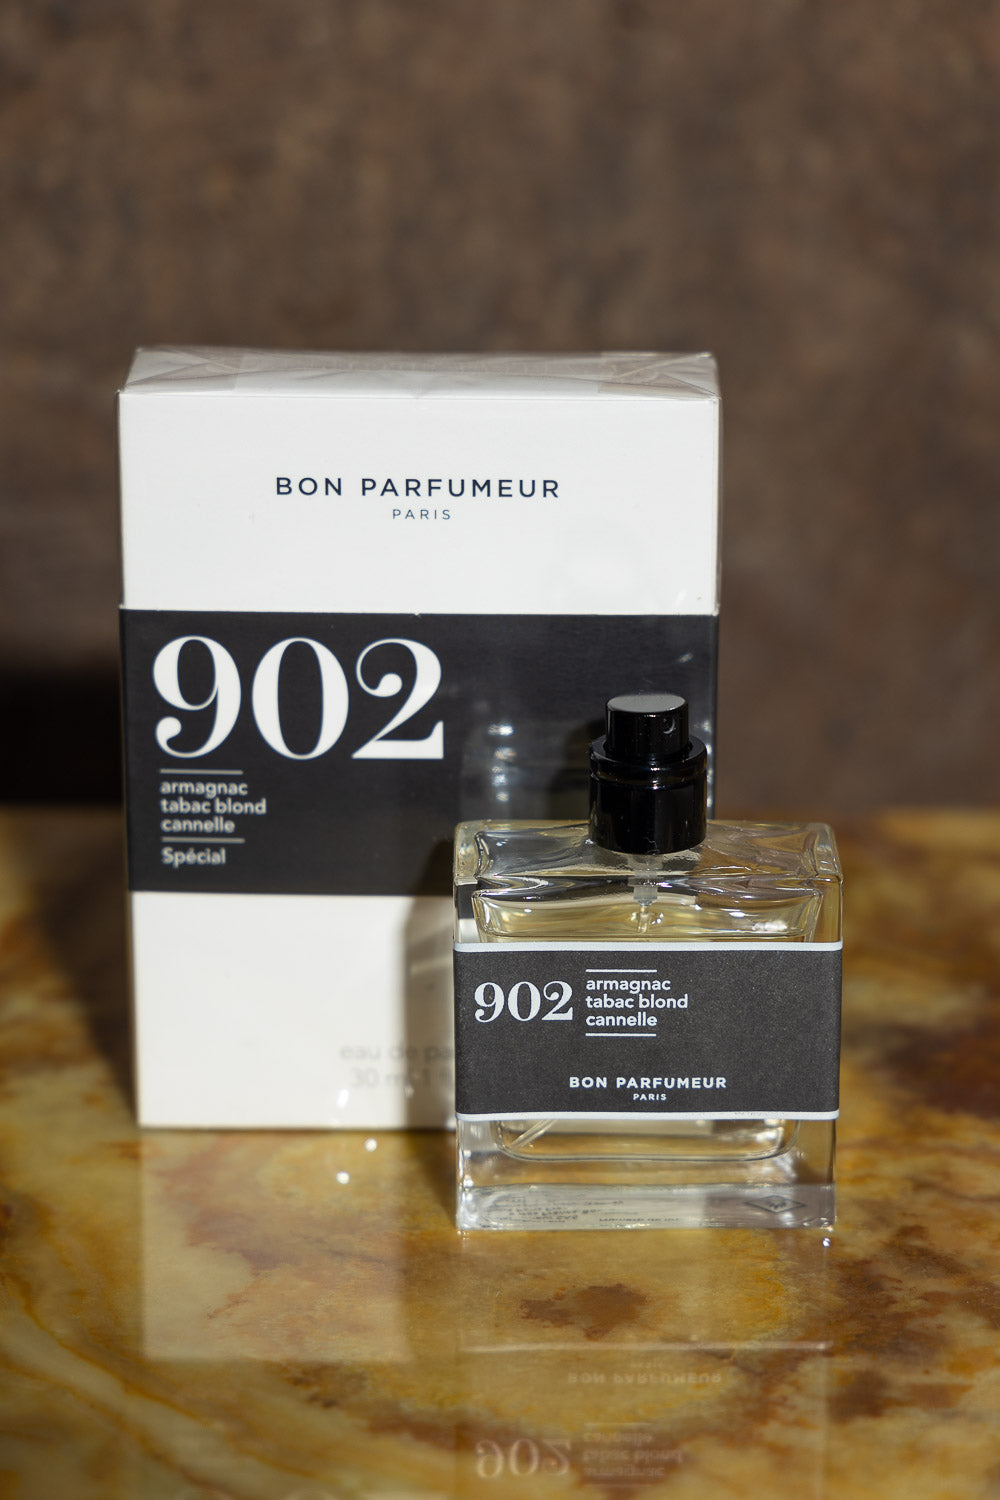 Bon Perfumeur 902